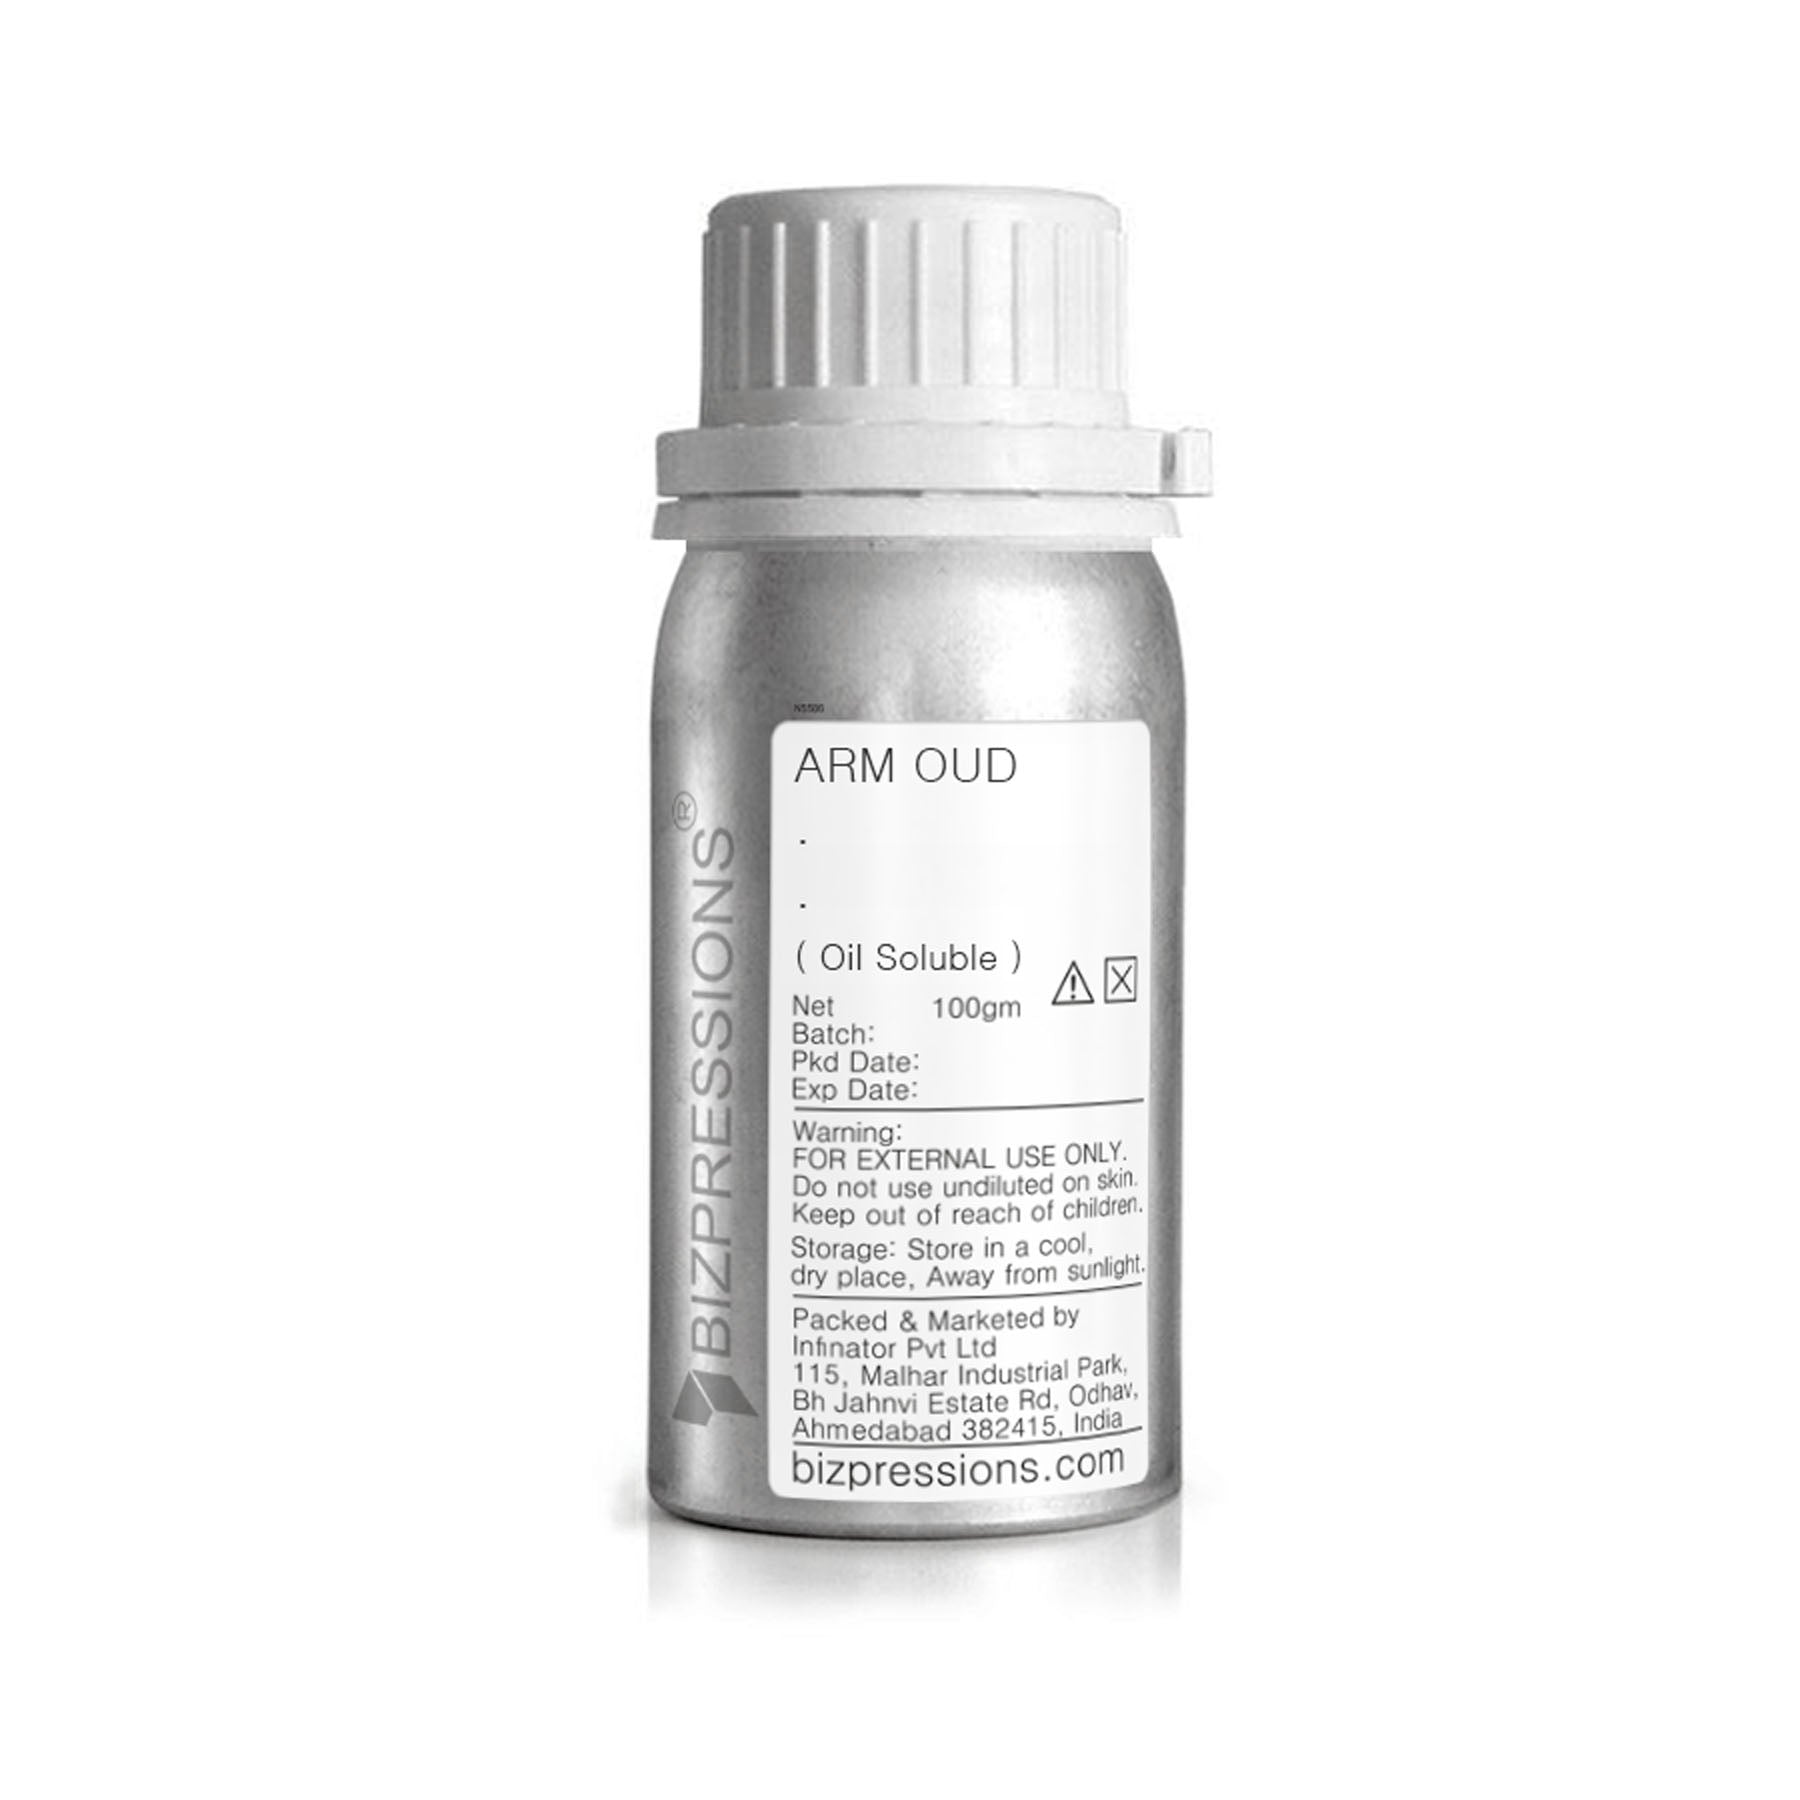 ARM OUD - Fragrance ( Oil Soluble ) - 100 gm